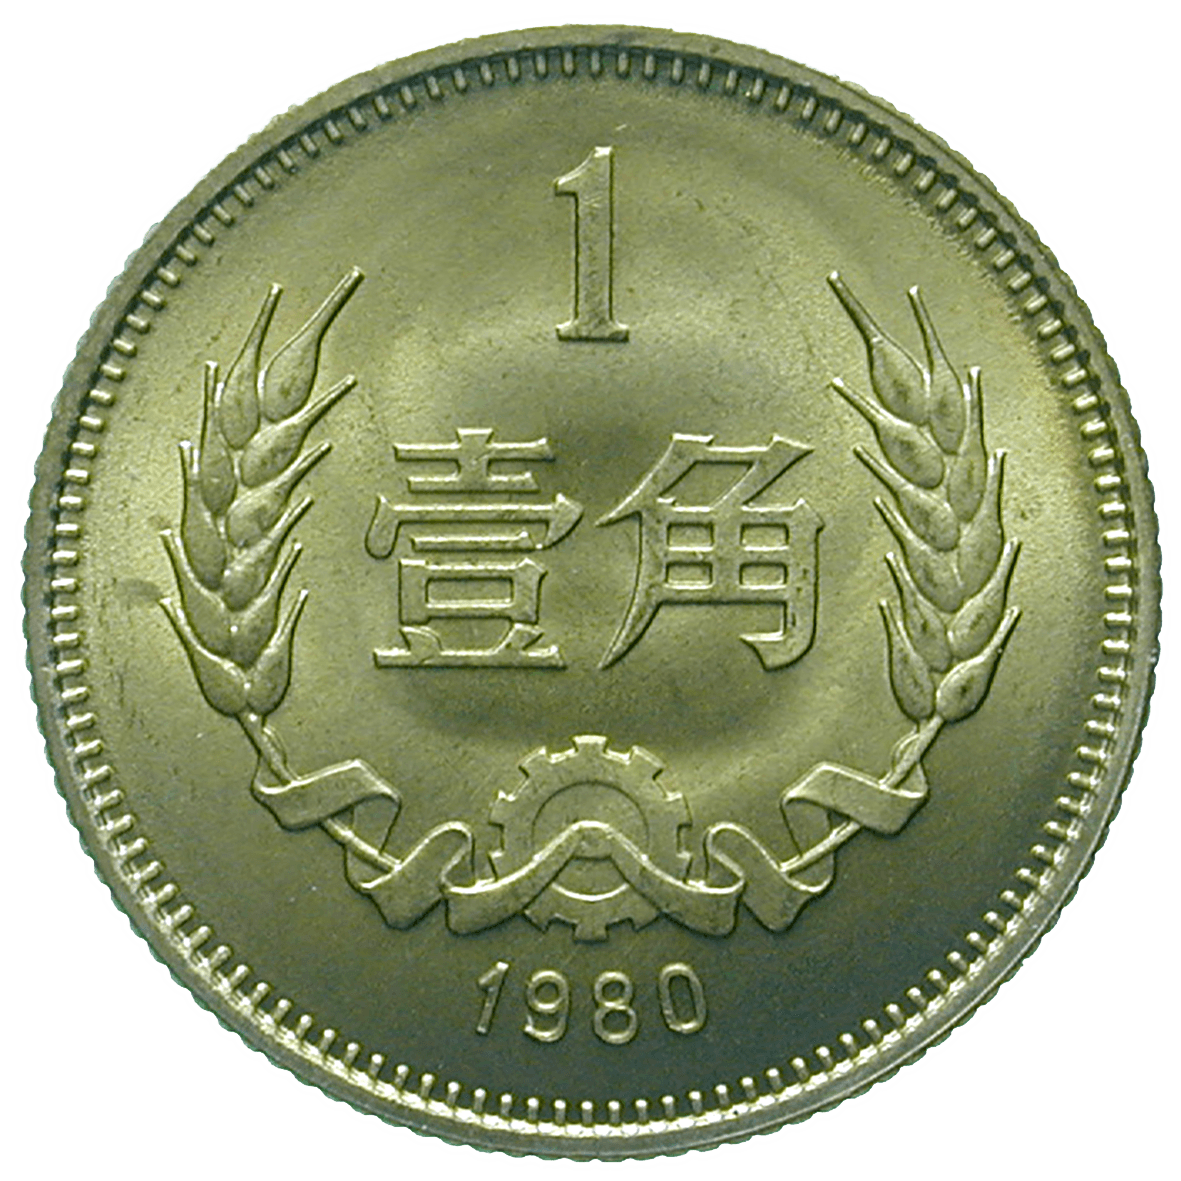 People's Republic of China, 1 Jiao 1980 (reverse)